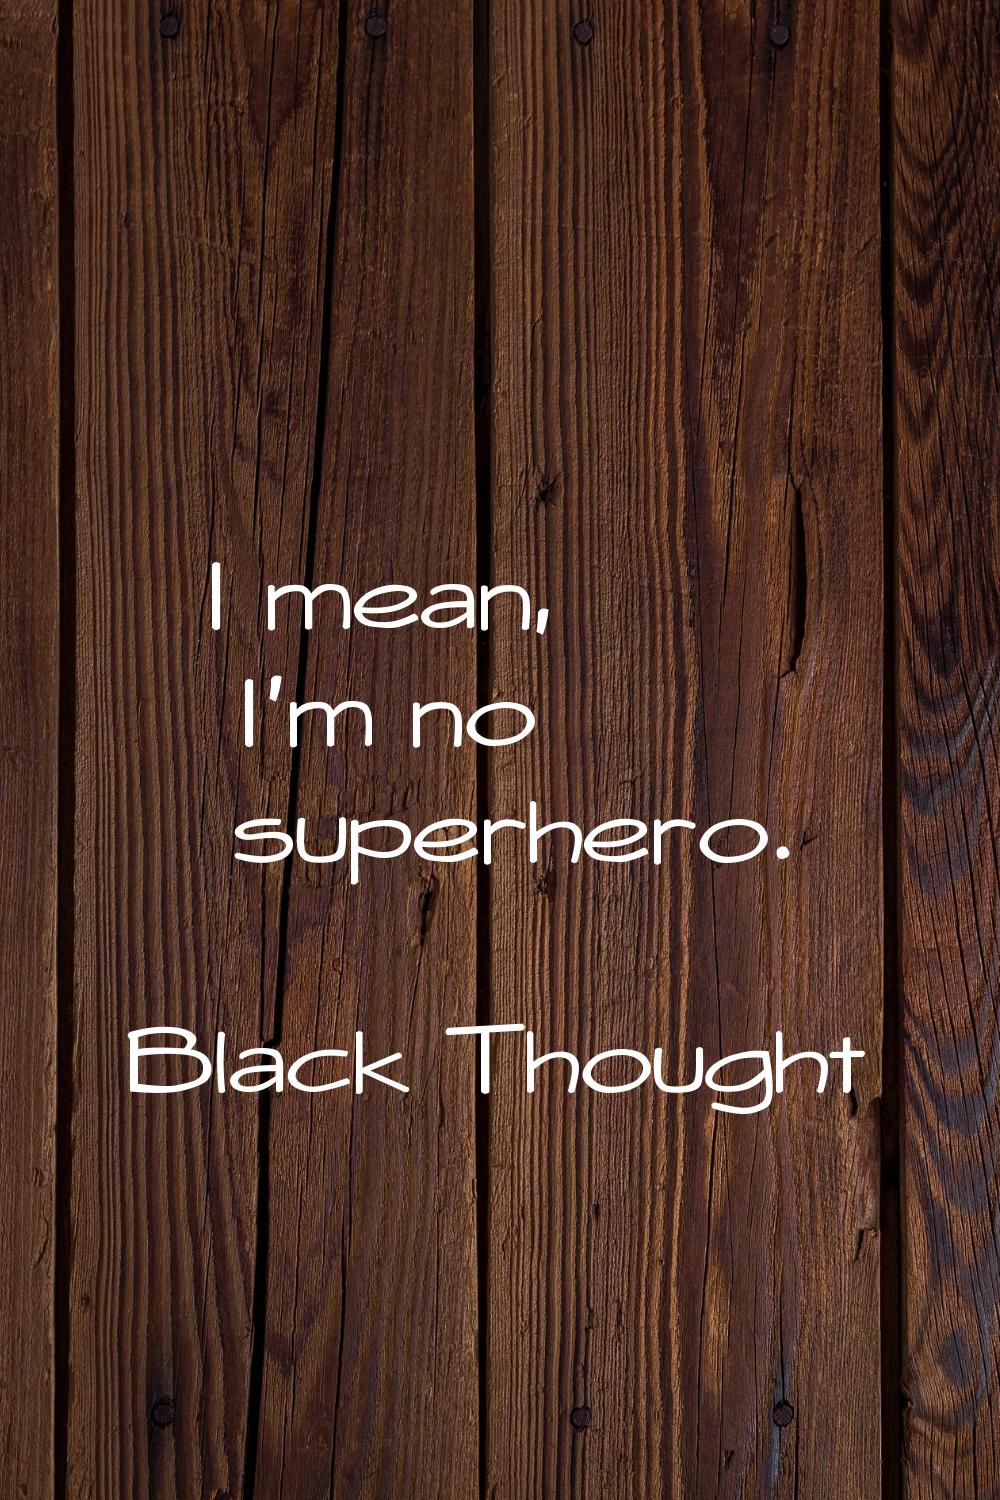 I mean, I'm no superhero.